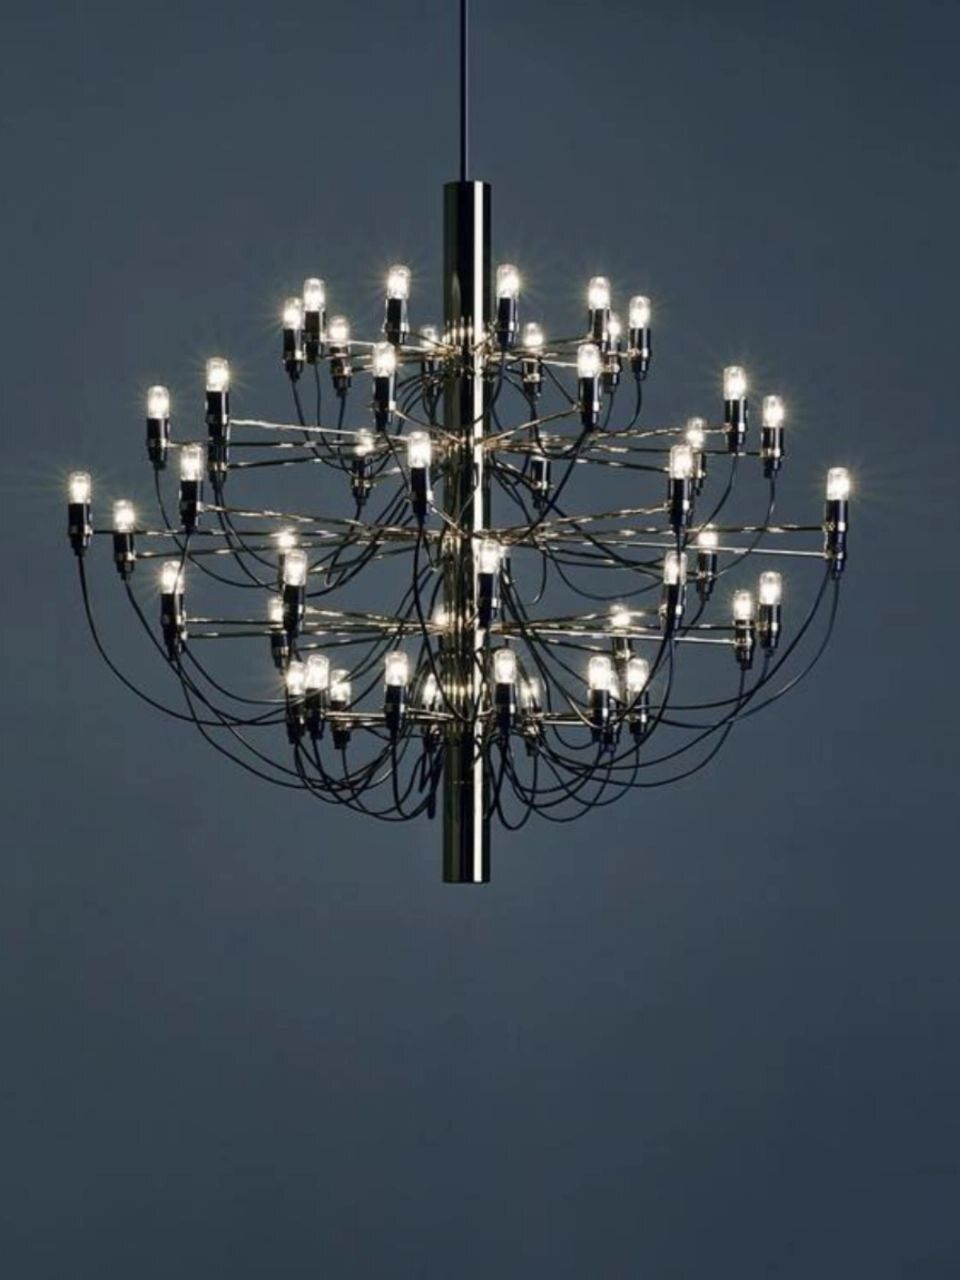 GORSCH chandelier by Romatti